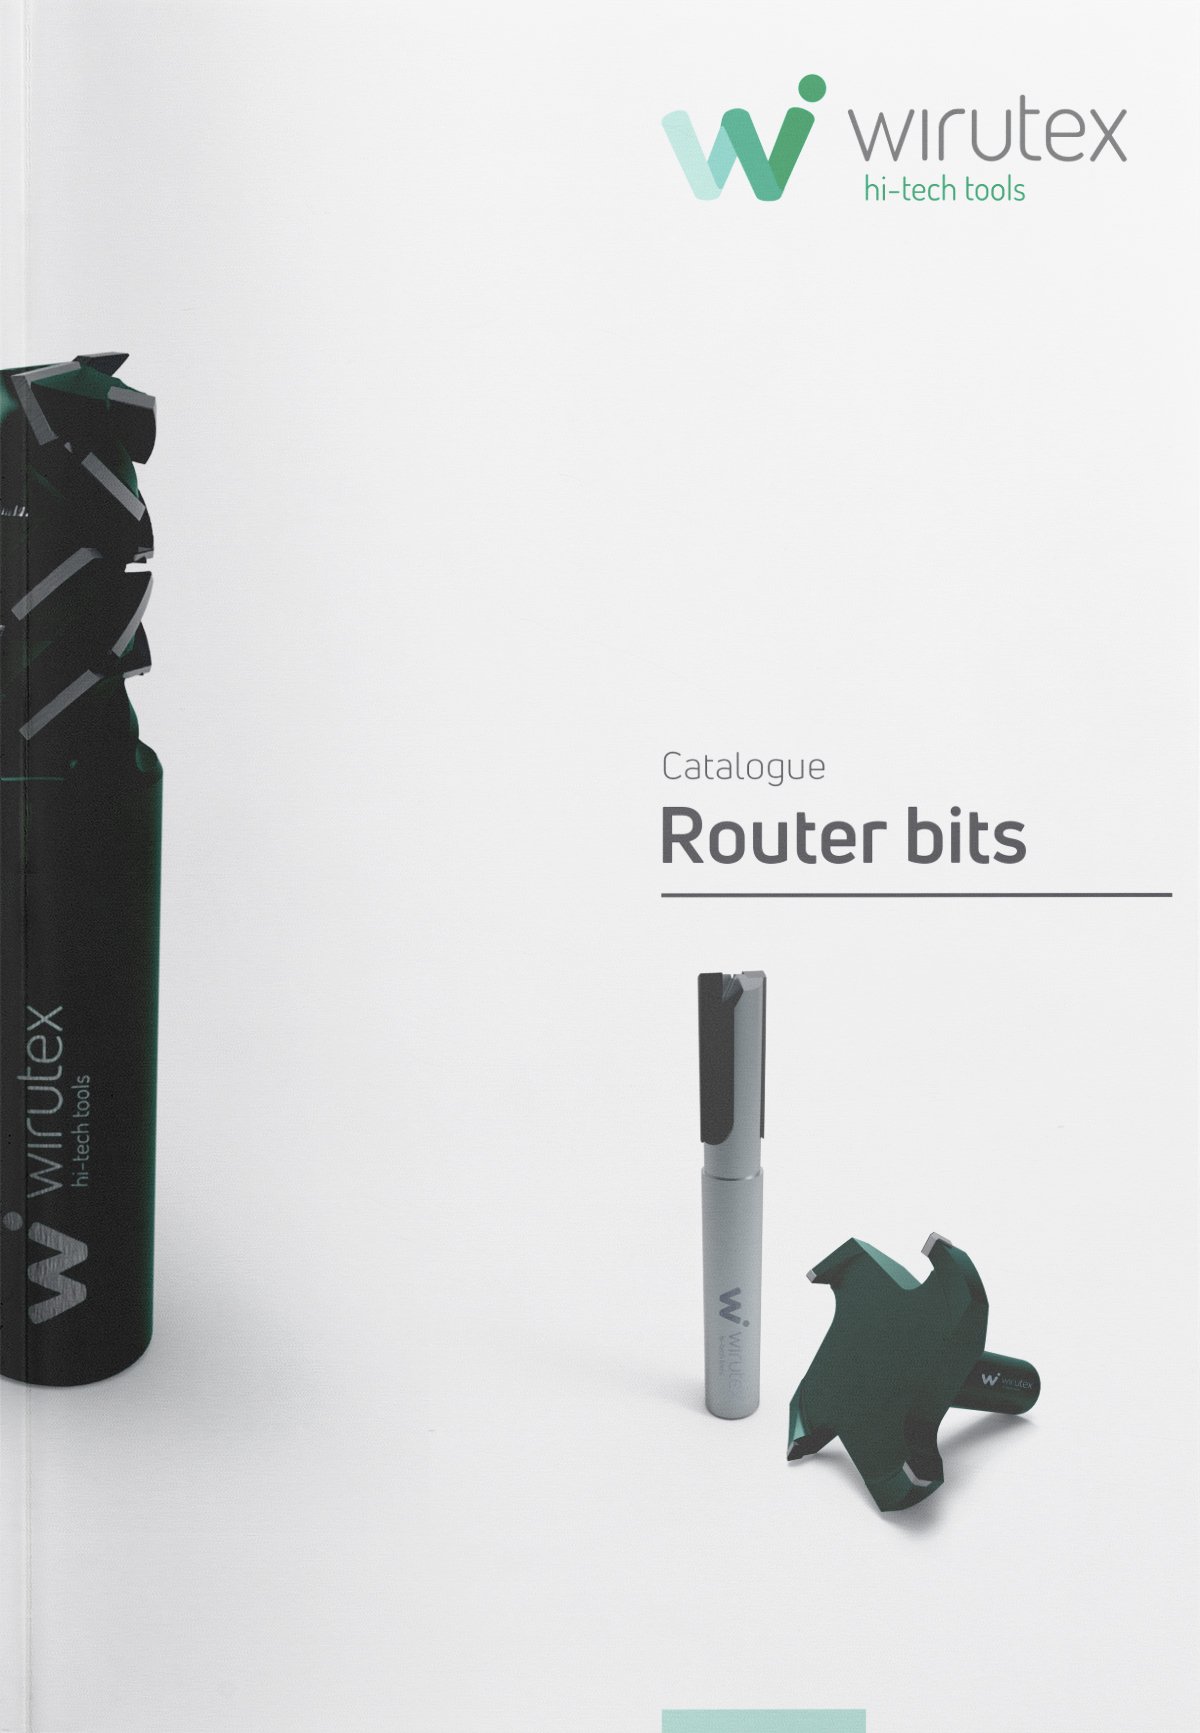 Wirutex-catalogo-router-bits-p02-2020